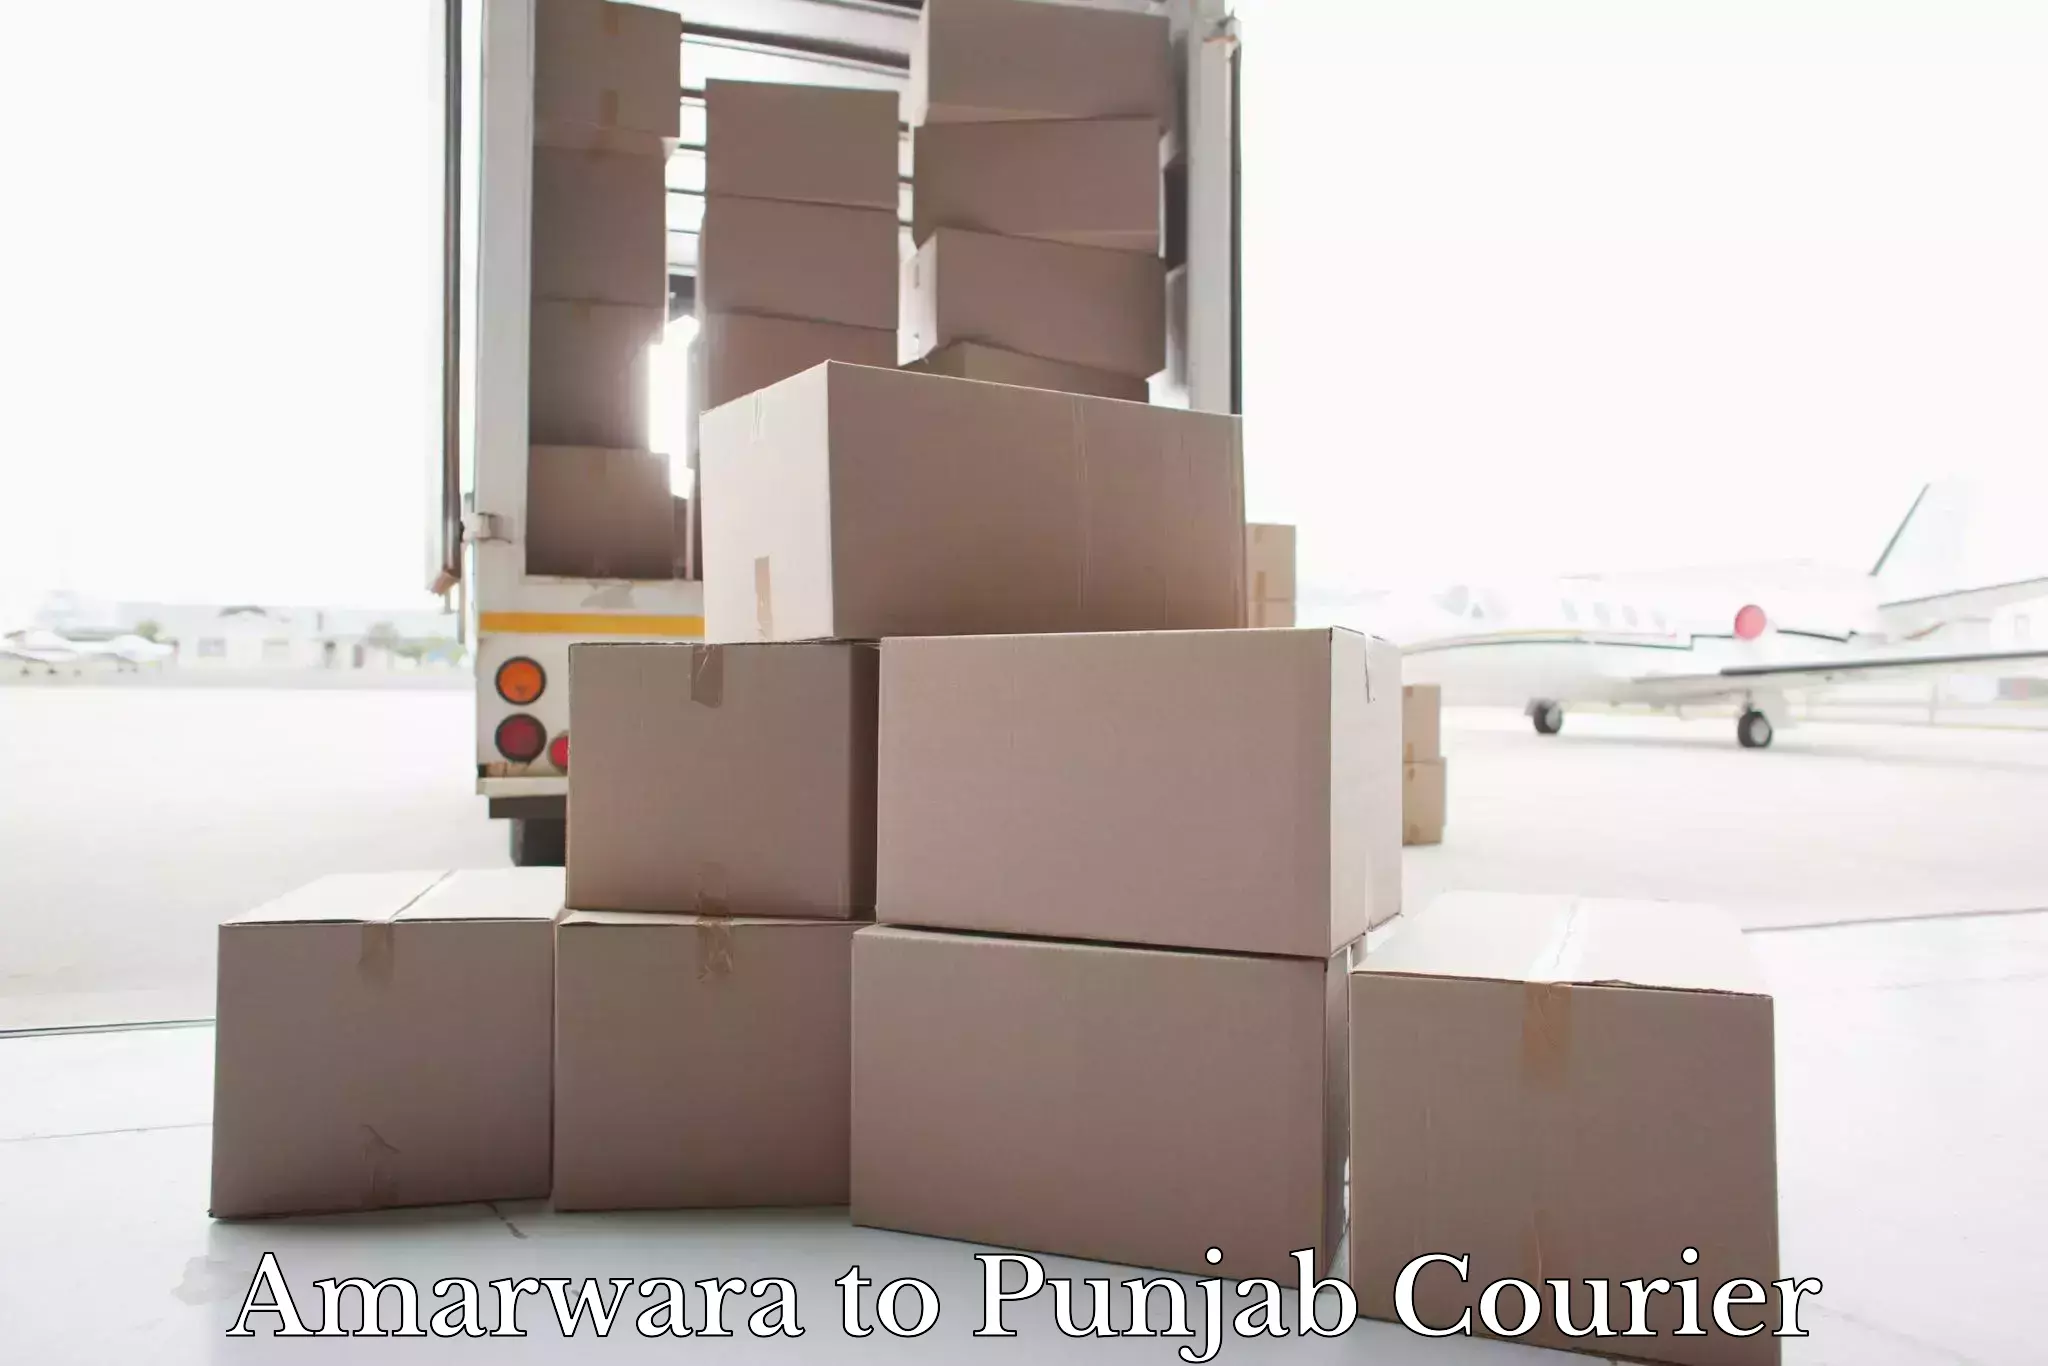 Luggage transport operations Amarwara to Punjab